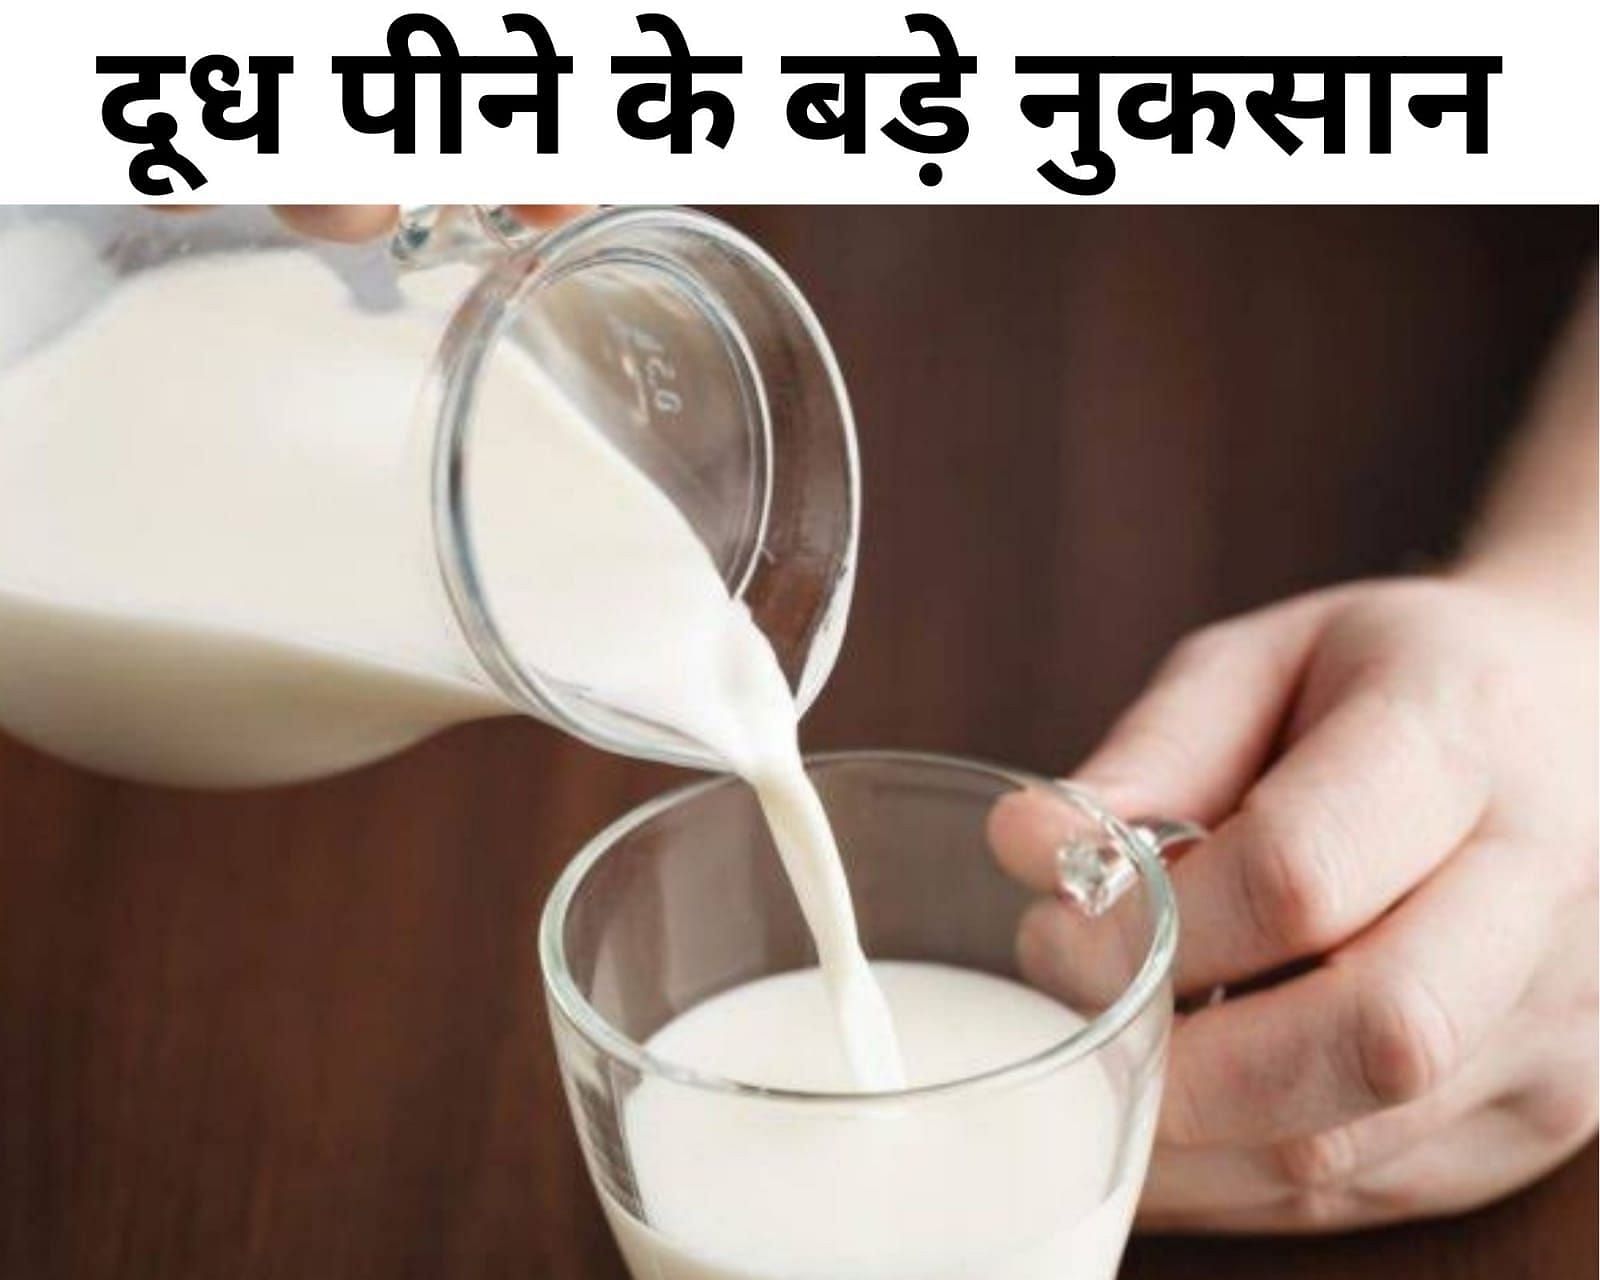  (फोटो - sportskeeda Hindi) दूध पीने के बड़े नुकसान